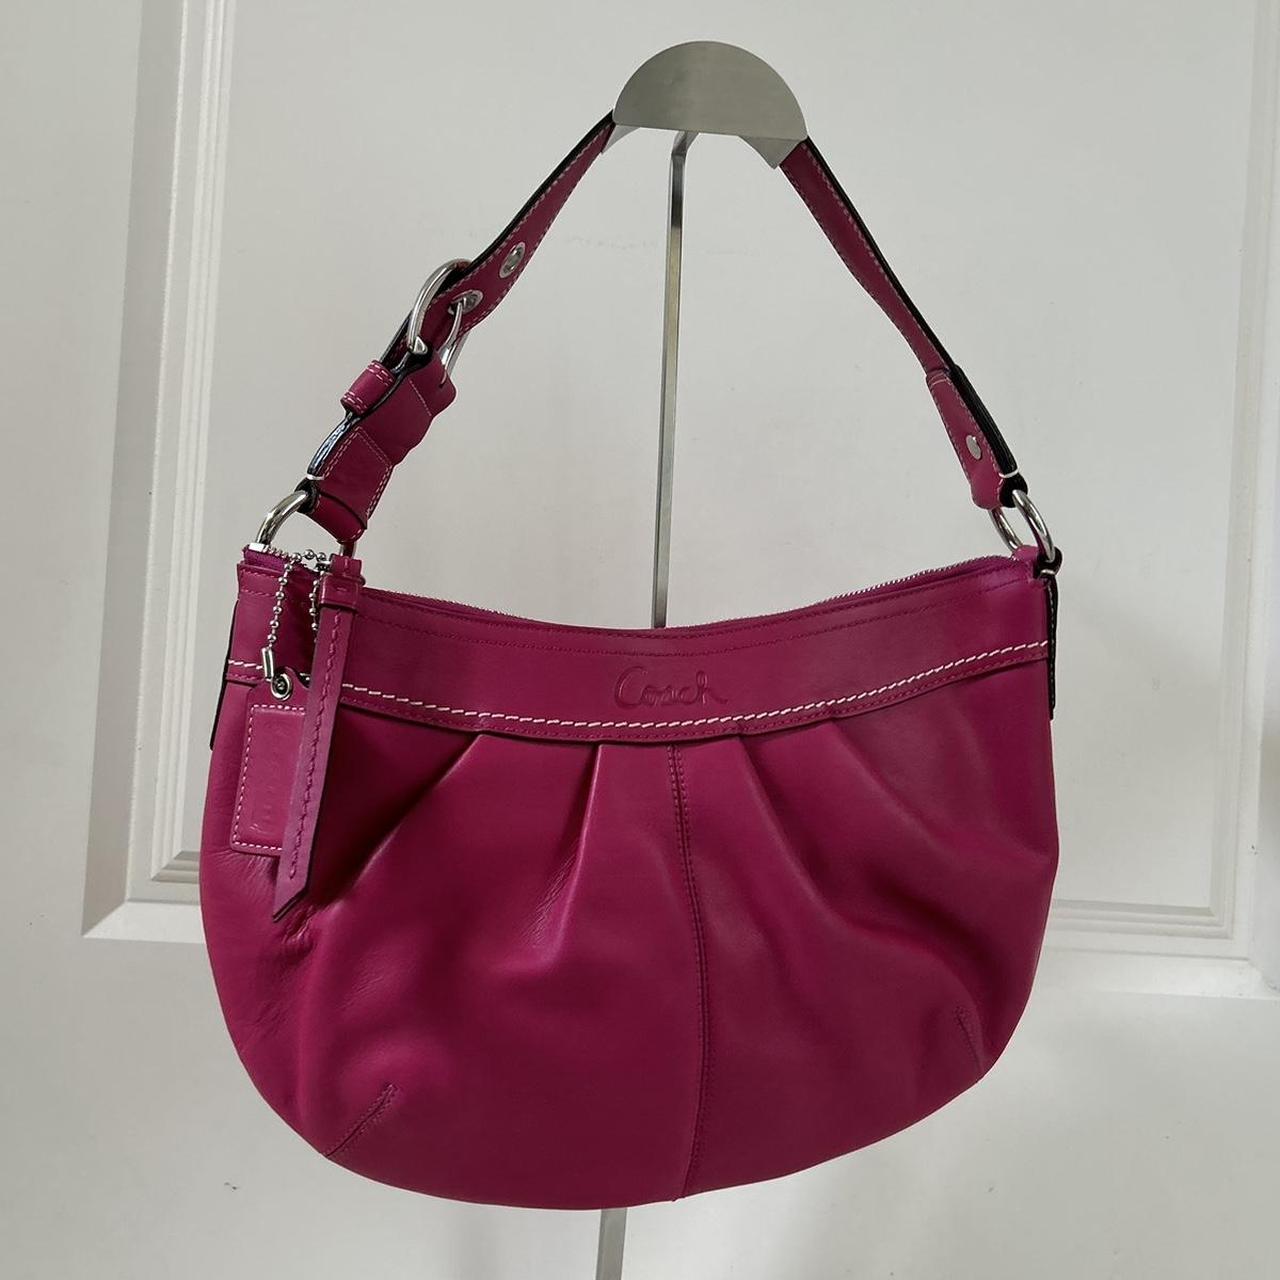 Authentic vintage coach pink leather shoulder bag... - Depop